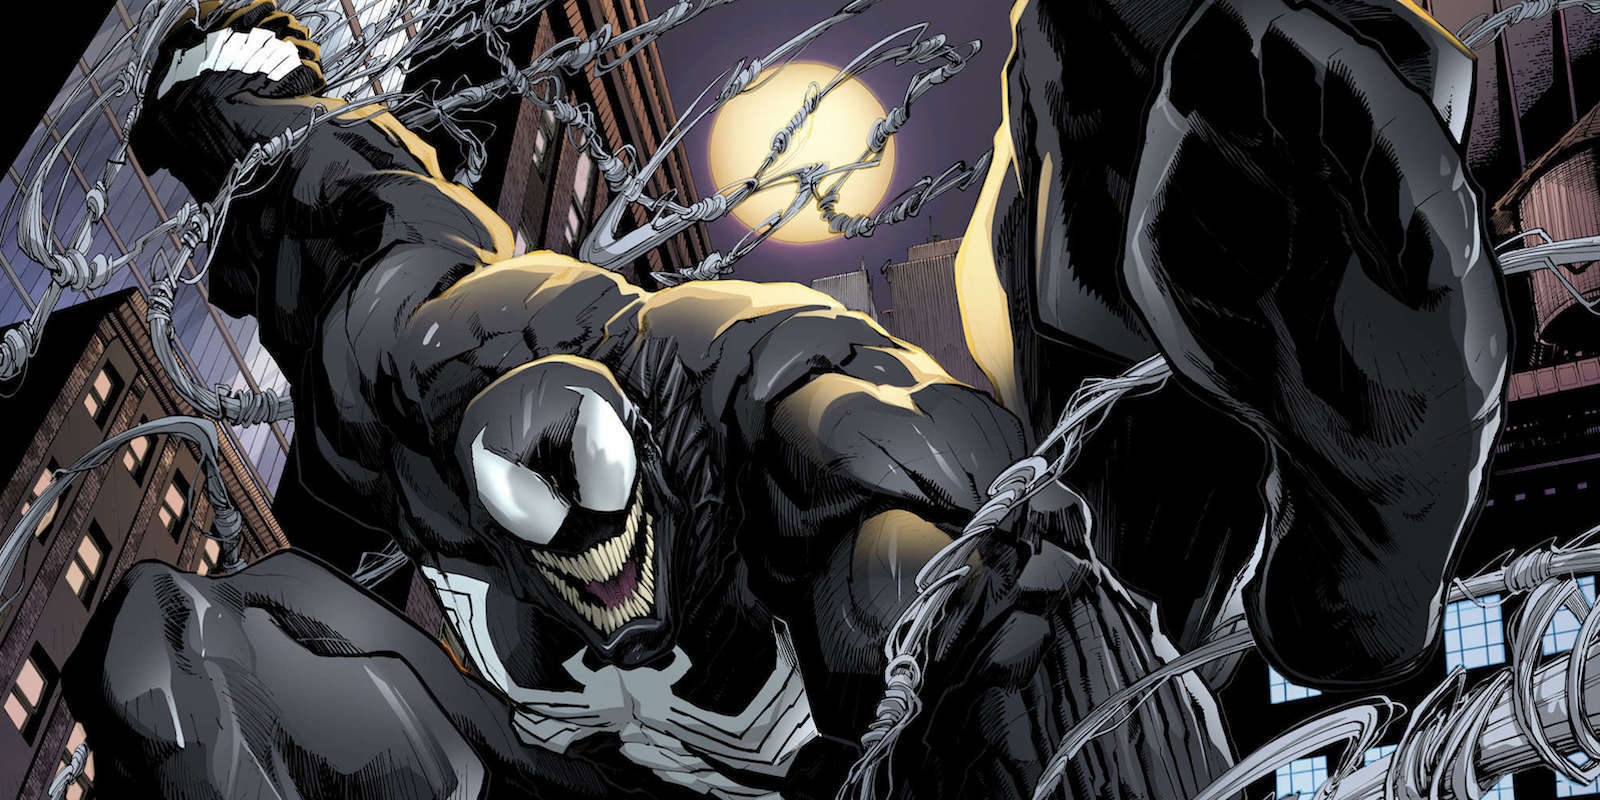 El spin-off 'Venom' retrasa su rodaje hasta otoño